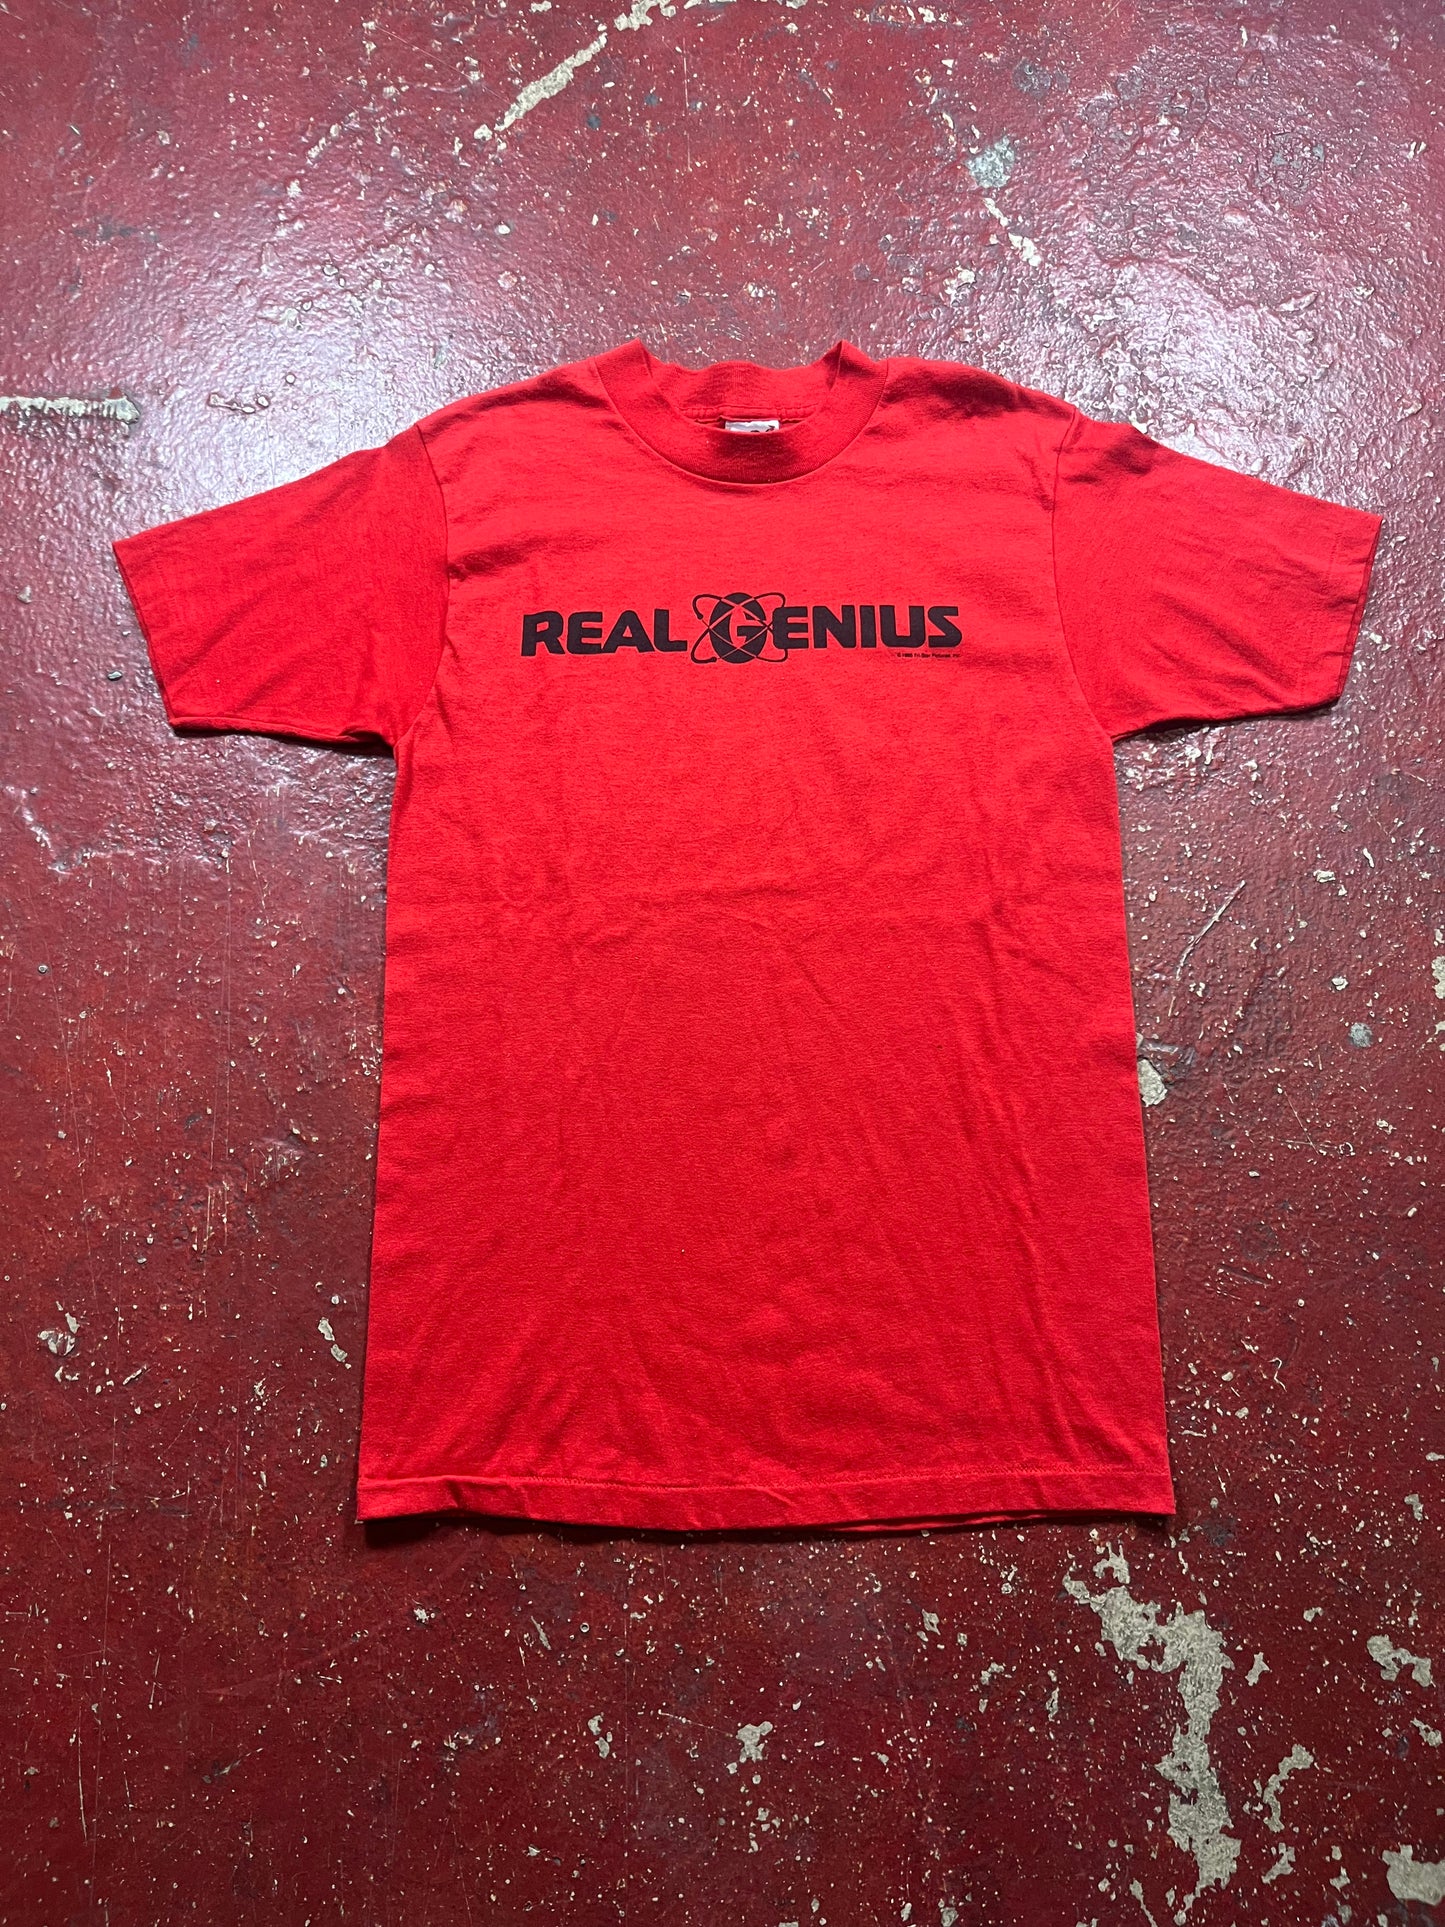 1985 Real Genius Tee